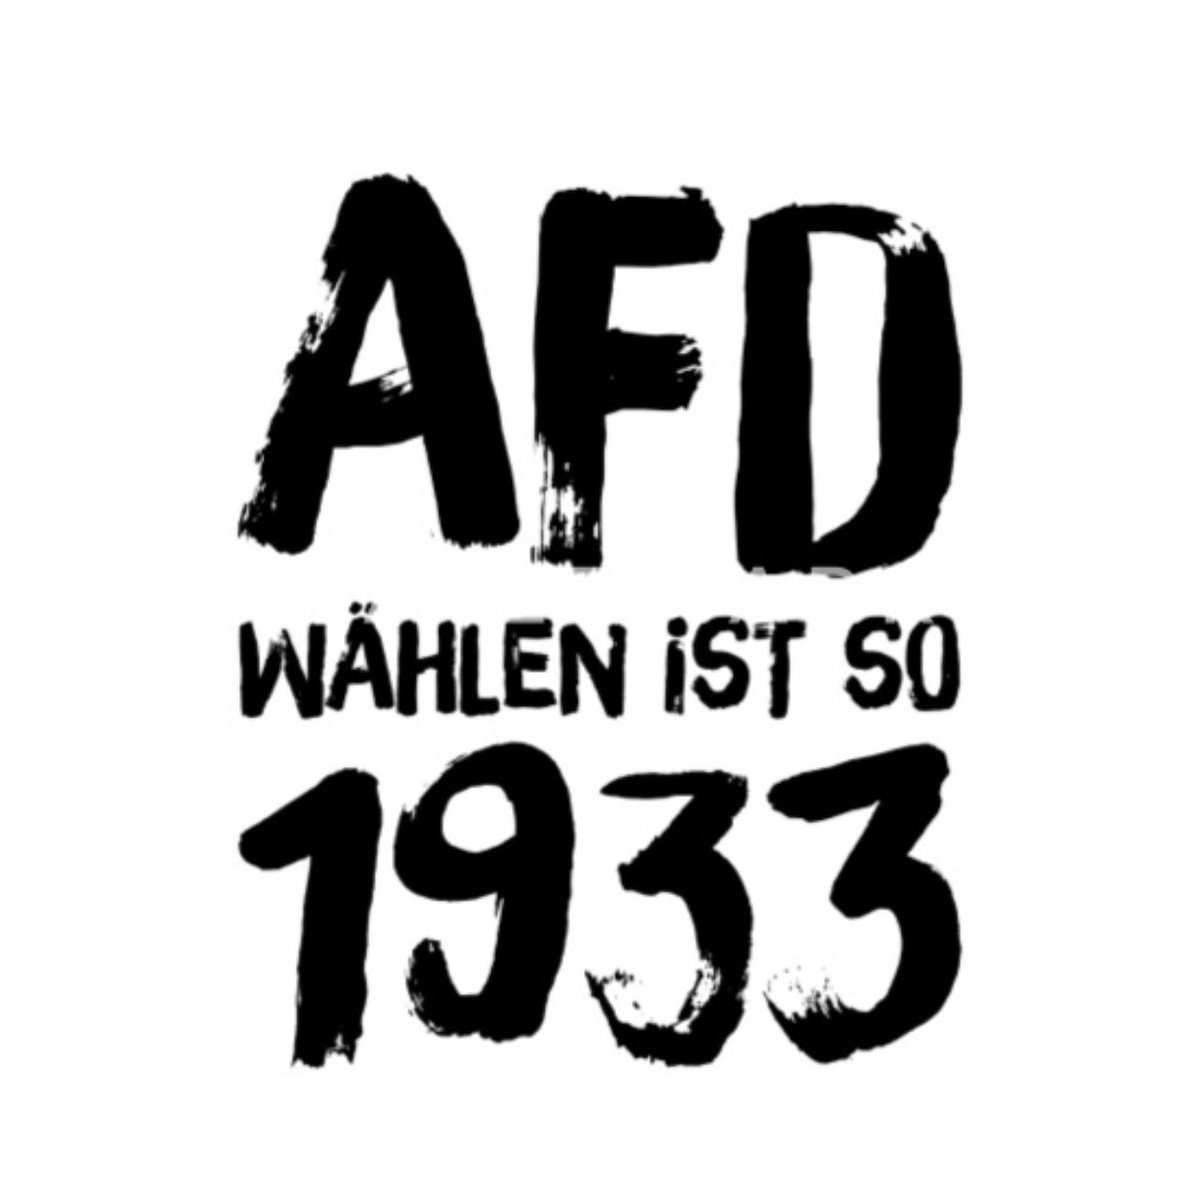 @AfD Immer noch besser, als die Hakenkreuz-Flagge hochzuhalten!
#FCKNZS #fckafd #nonazis #noafd #BerndHöcke #AfDgehoertnichtzuDeutschland #AfDVerbotSofort